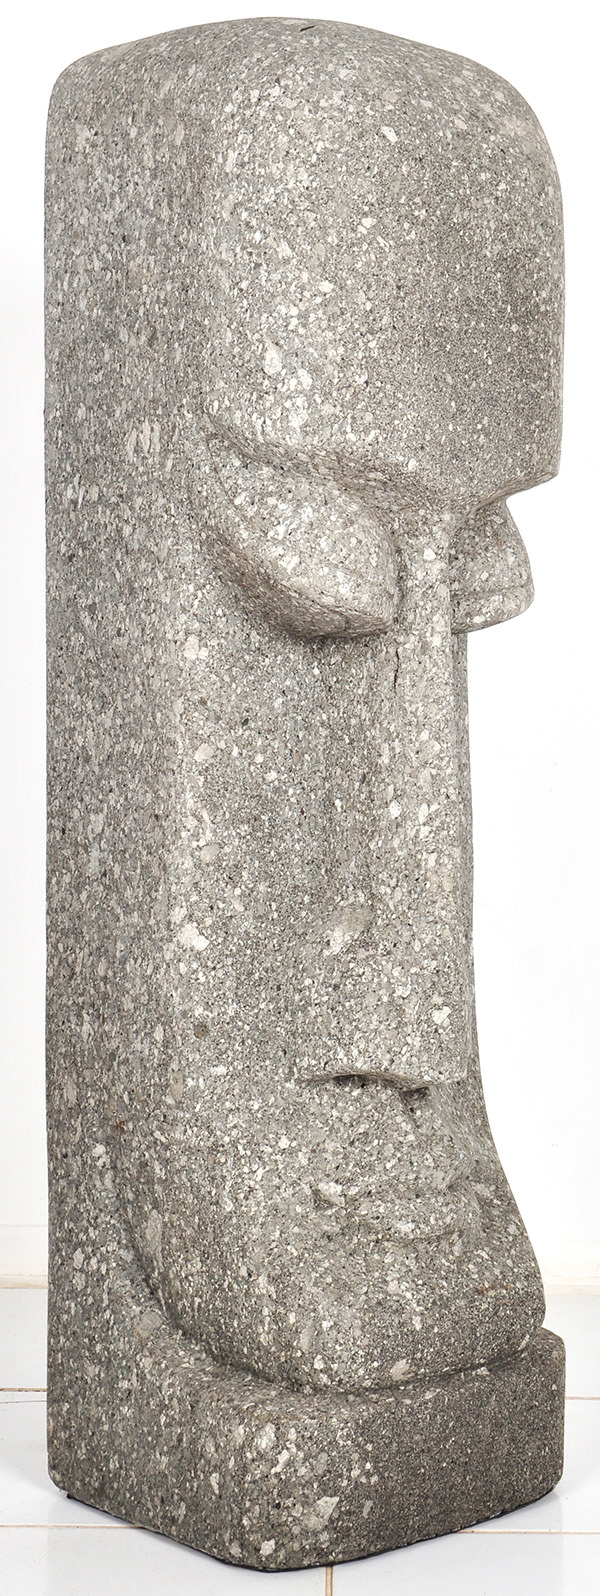 primitive ethnic stone sculpture